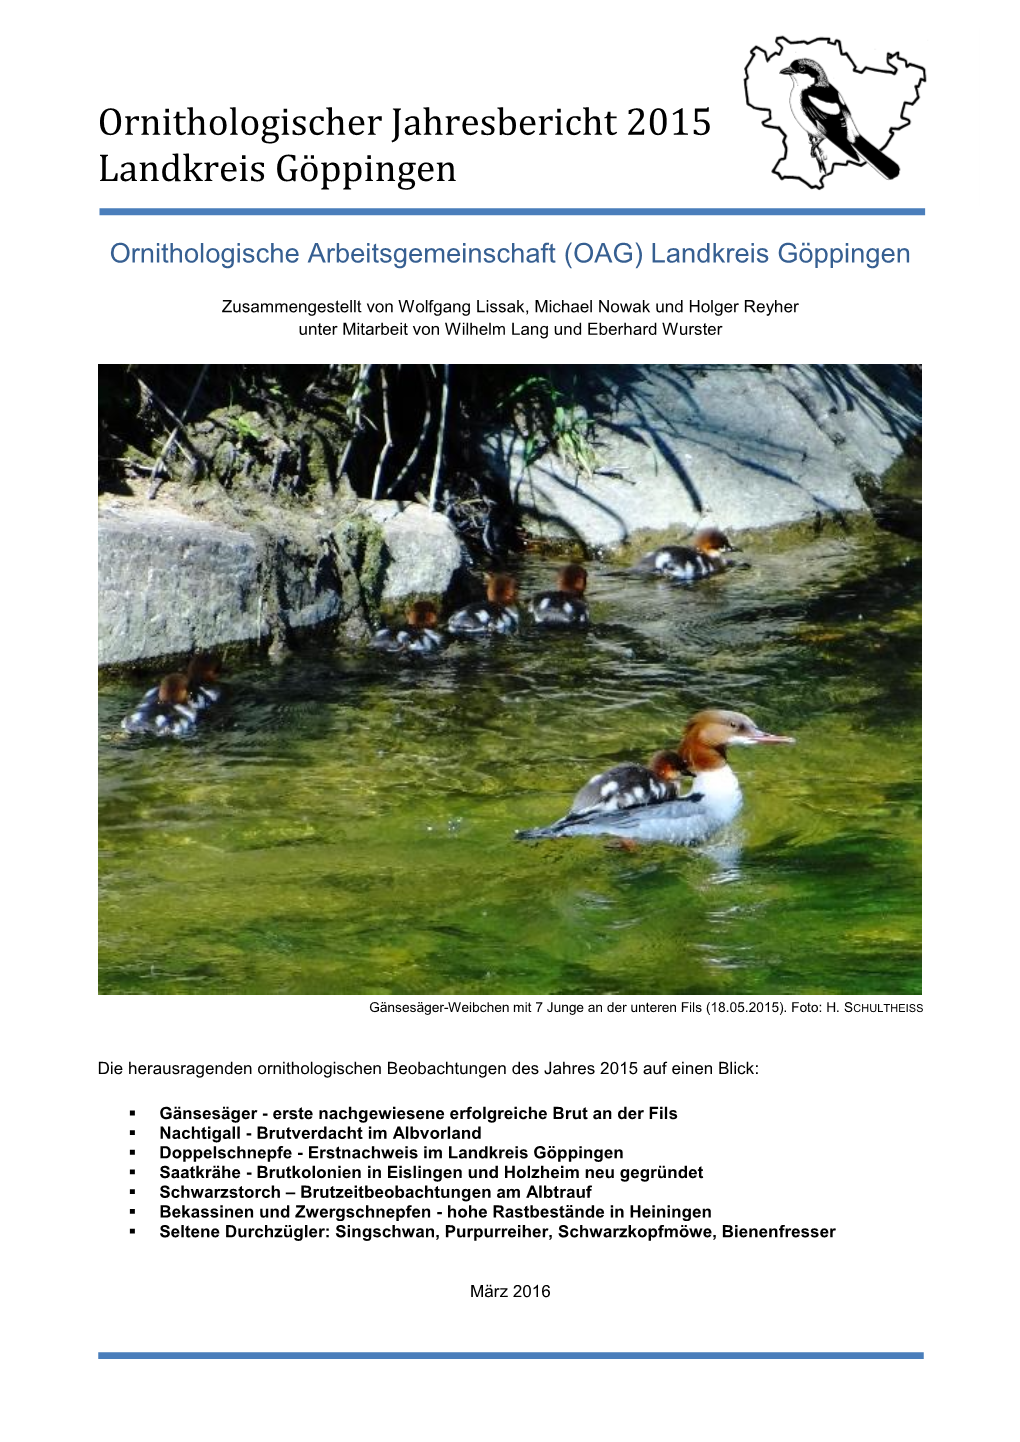 Ornithologischer Jahresbericht 2015 Landkreis Göppingen